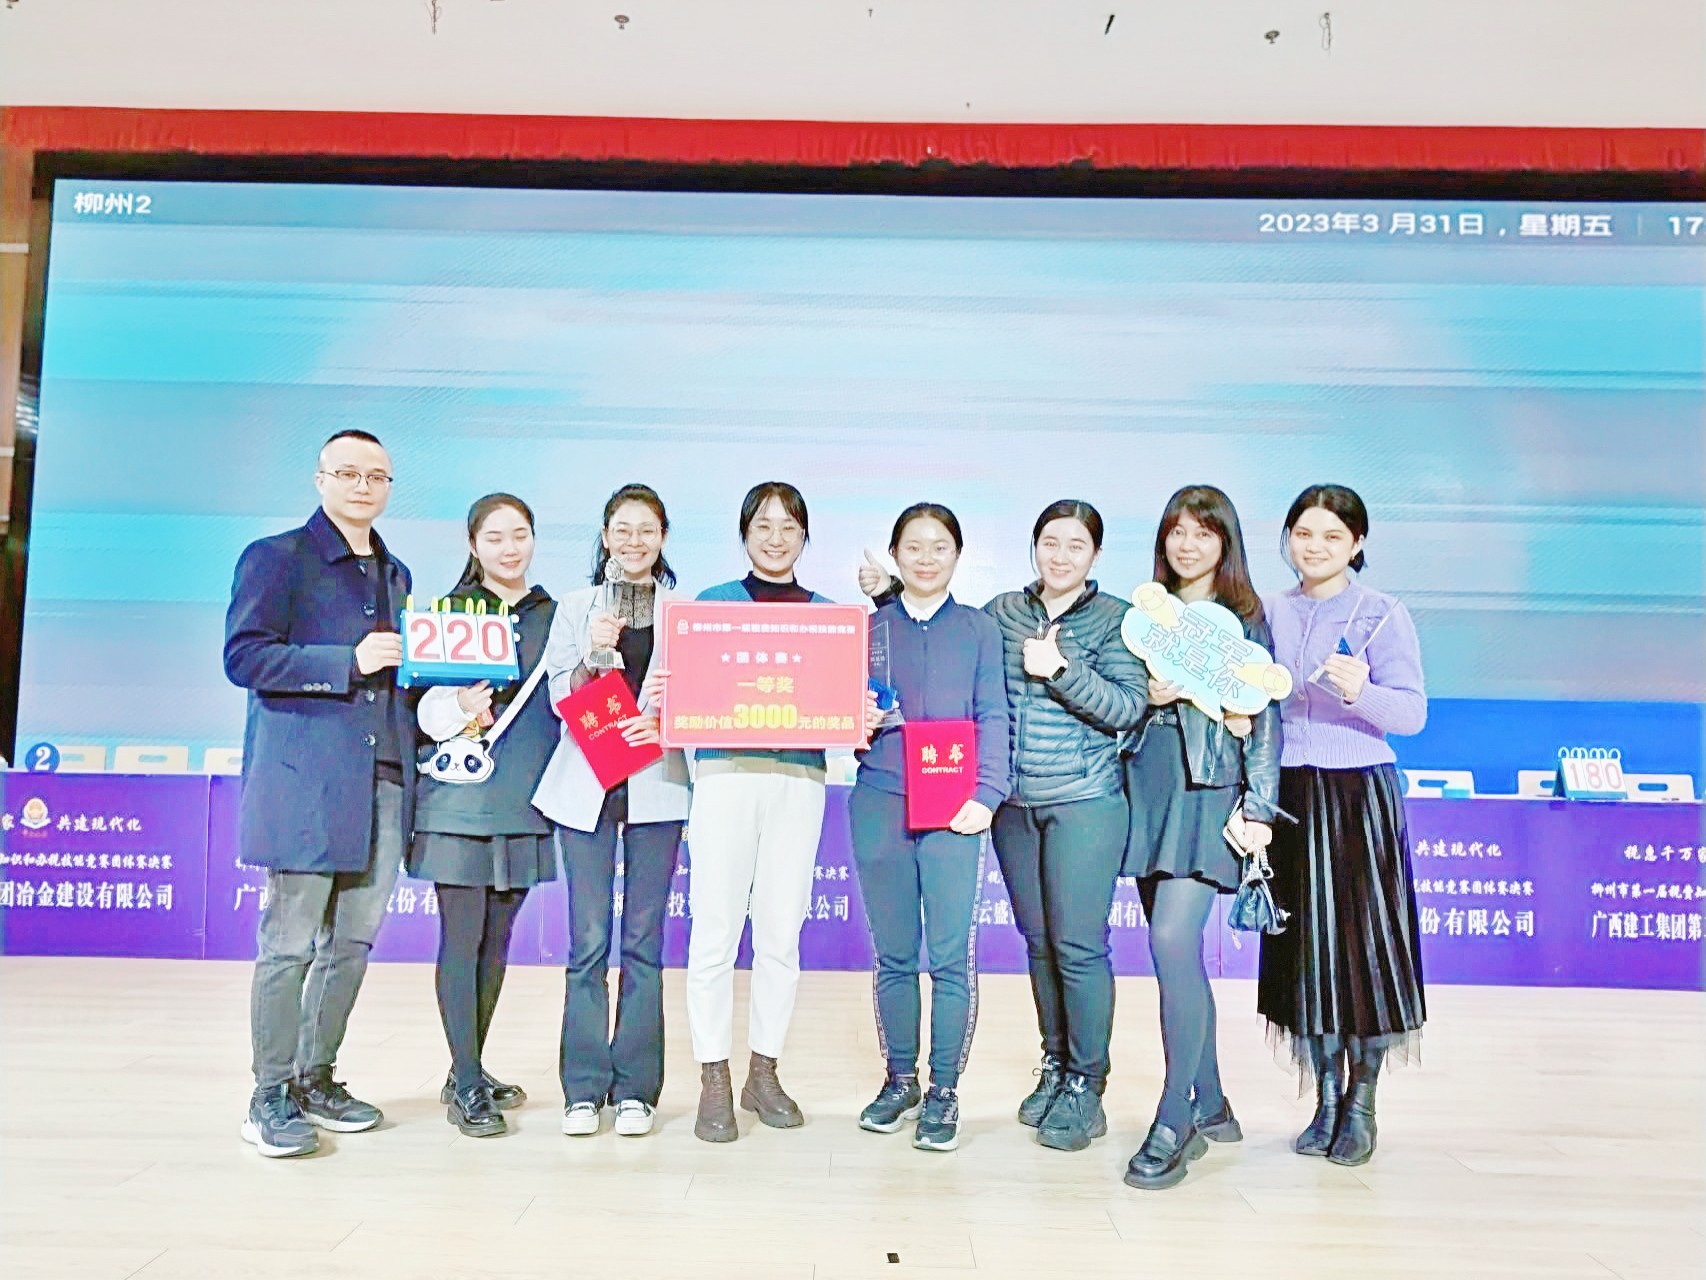 方盛集團在“柳州市第一屆稅費知識和辦稅技能競賽”中勇創佳績